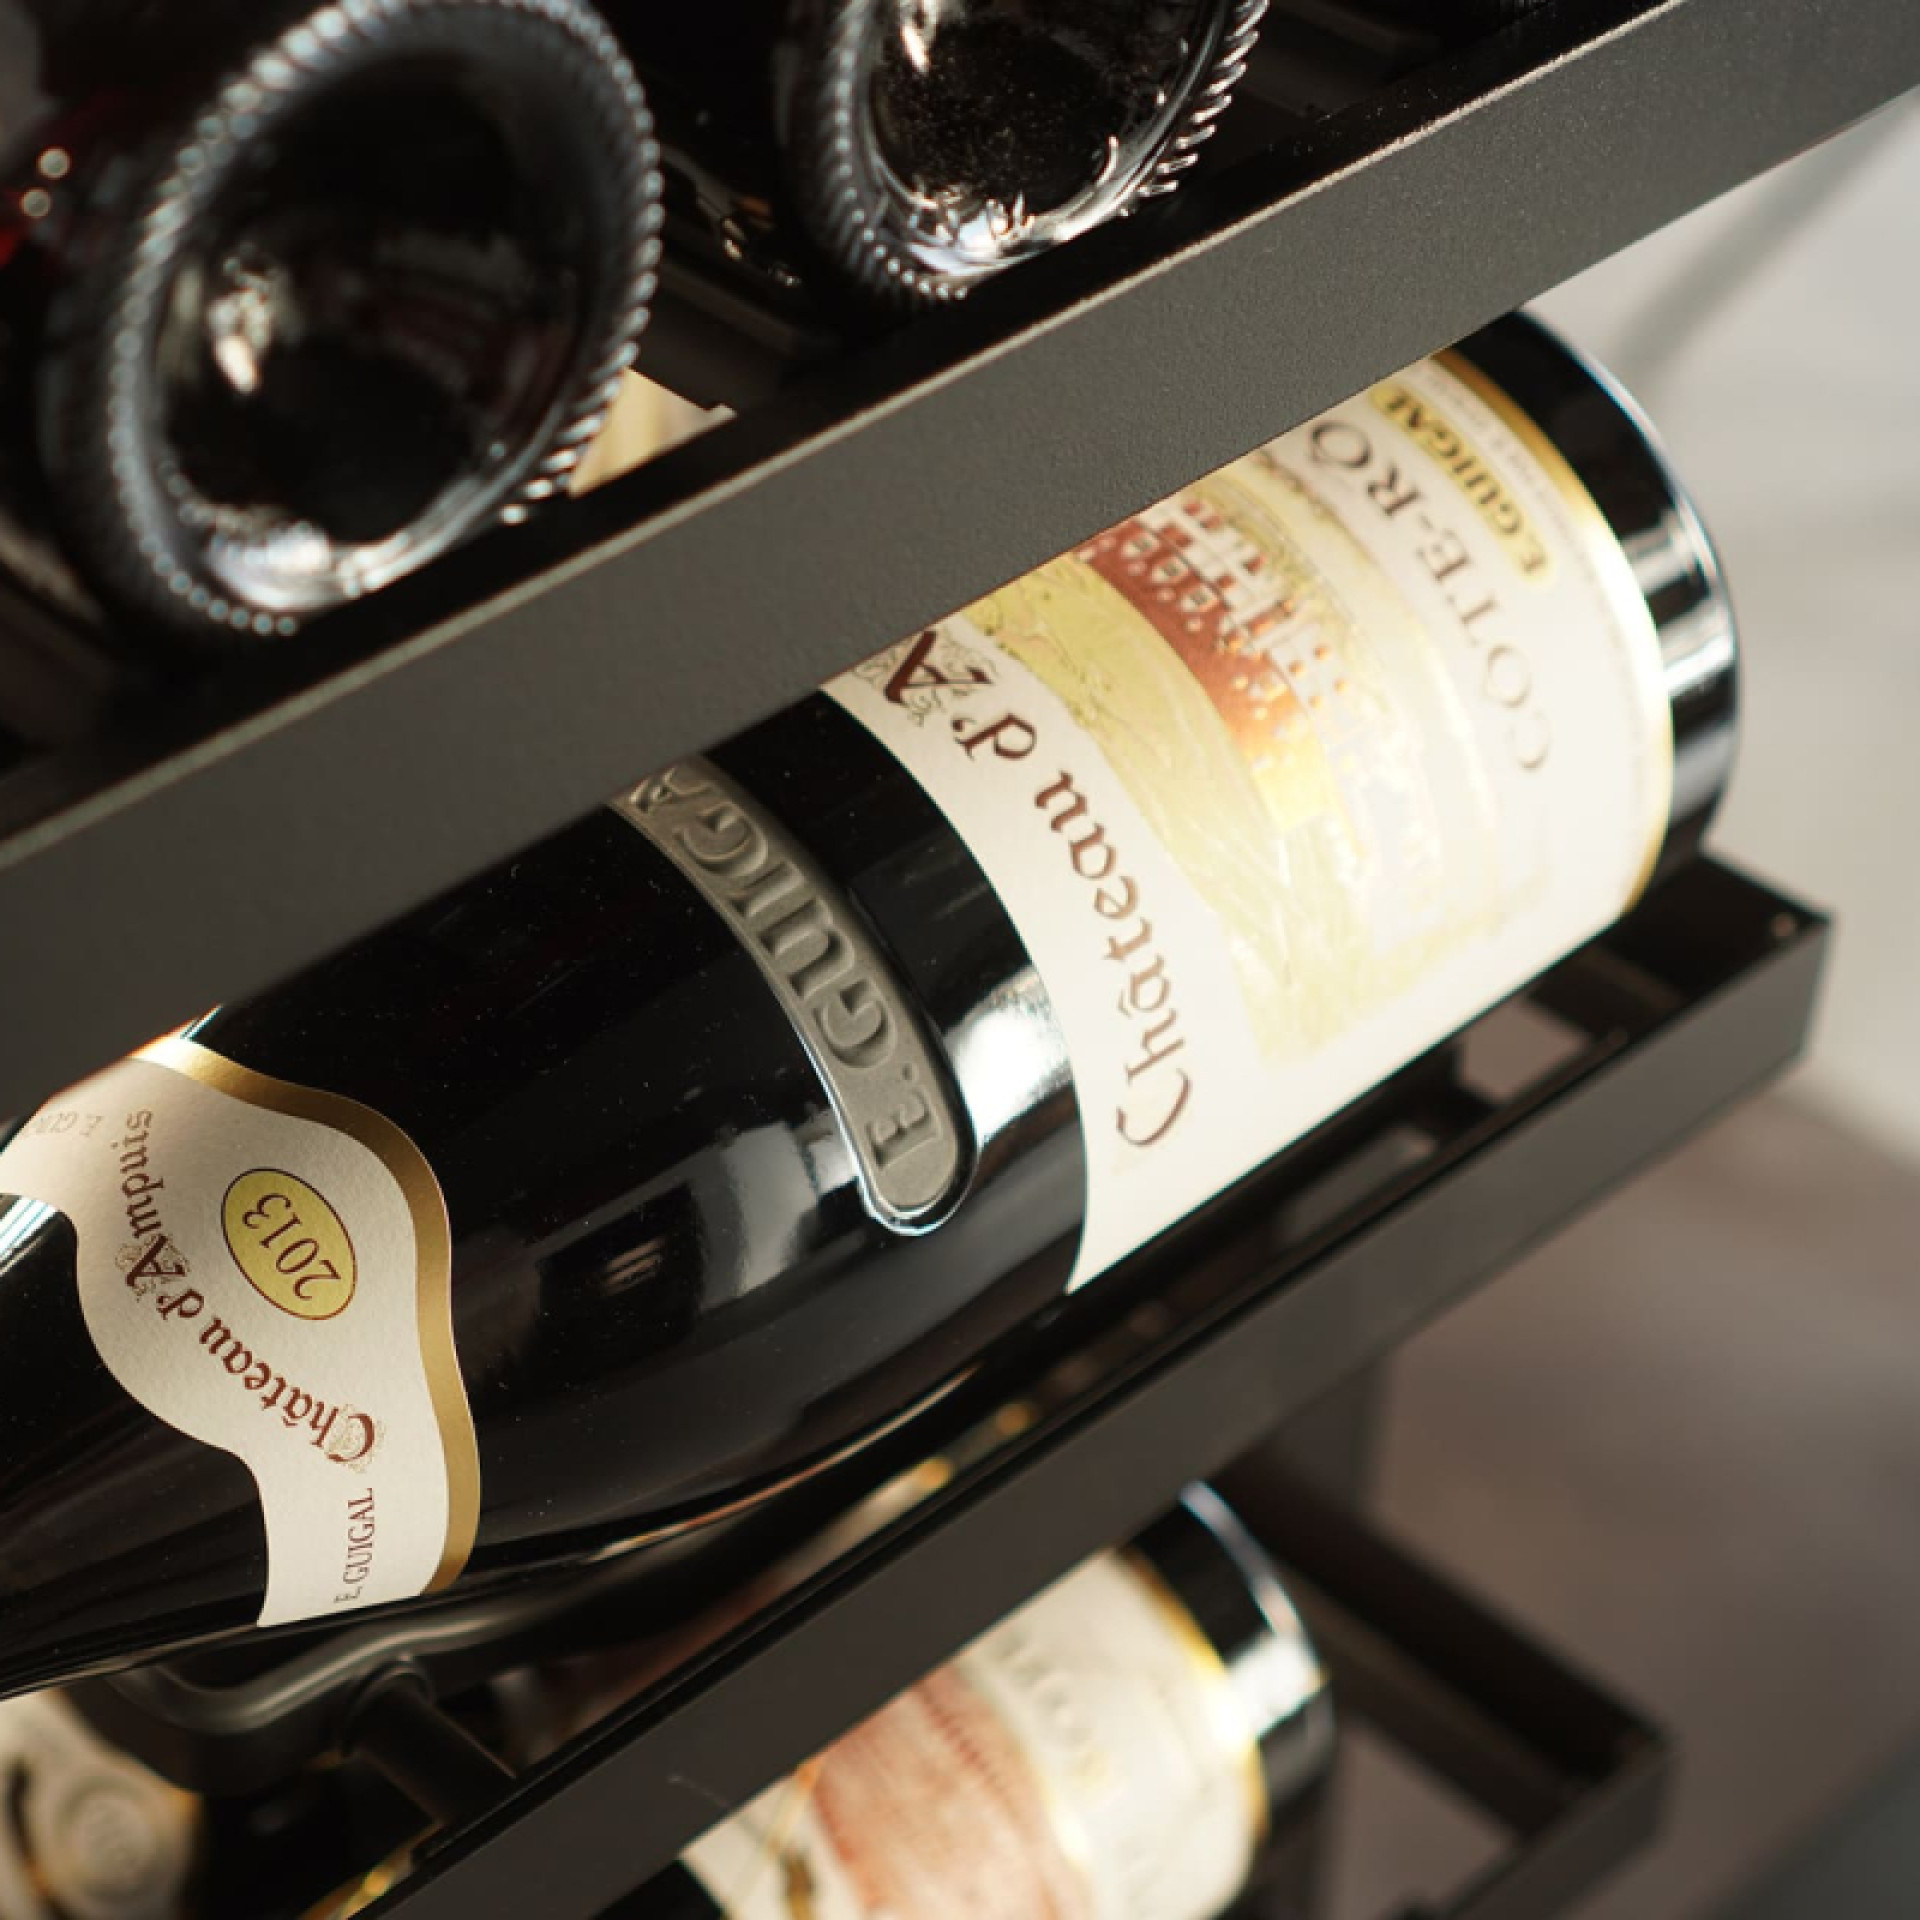 Rangement vin aérien avec plusieurs types d'étagères qui offrent de nombreuses possibilités de rangement et de présentation.